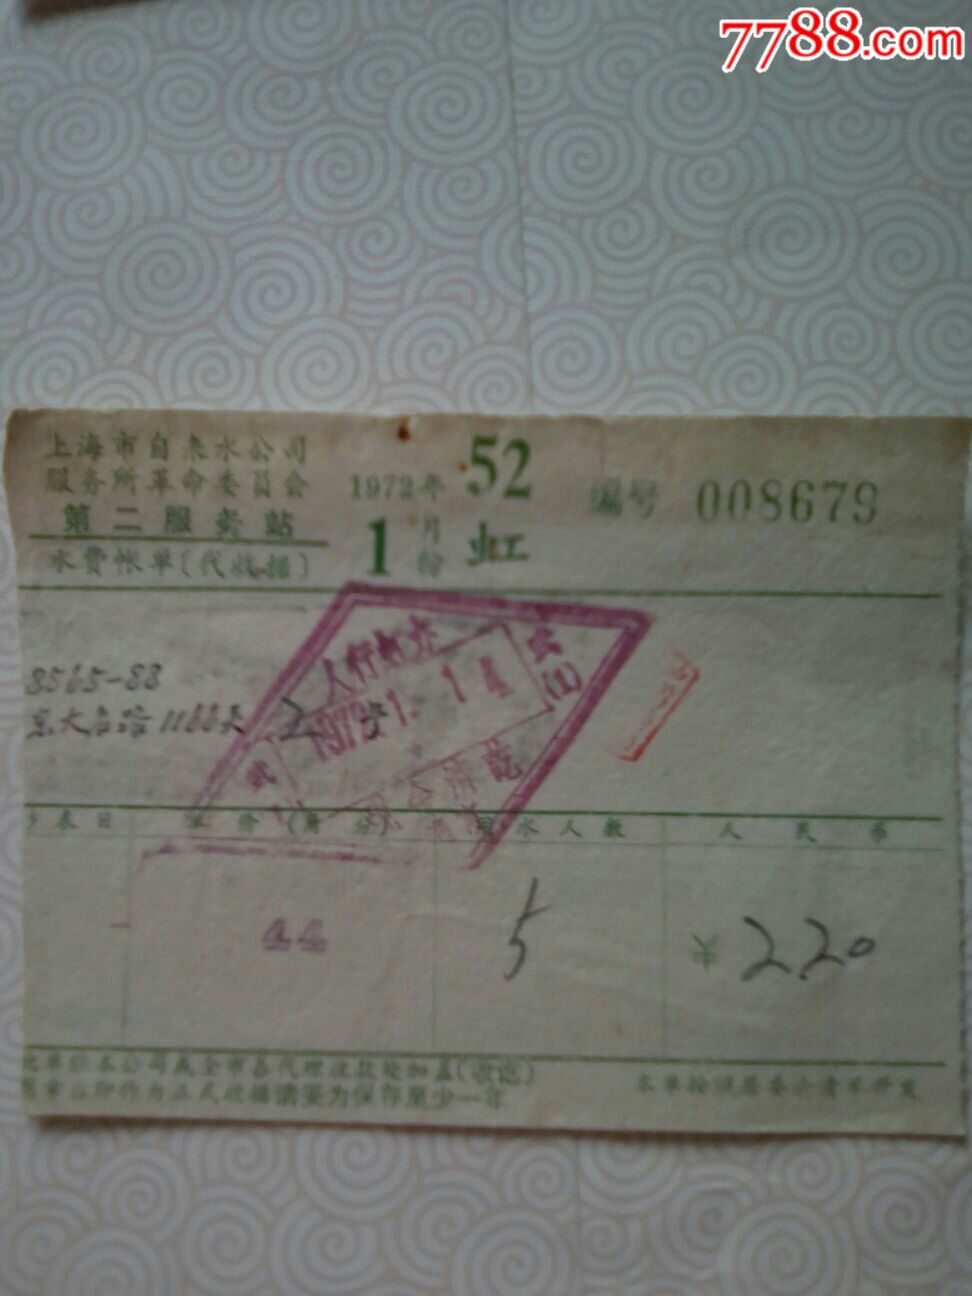 上海市自来水公司水费账单(3张虹)